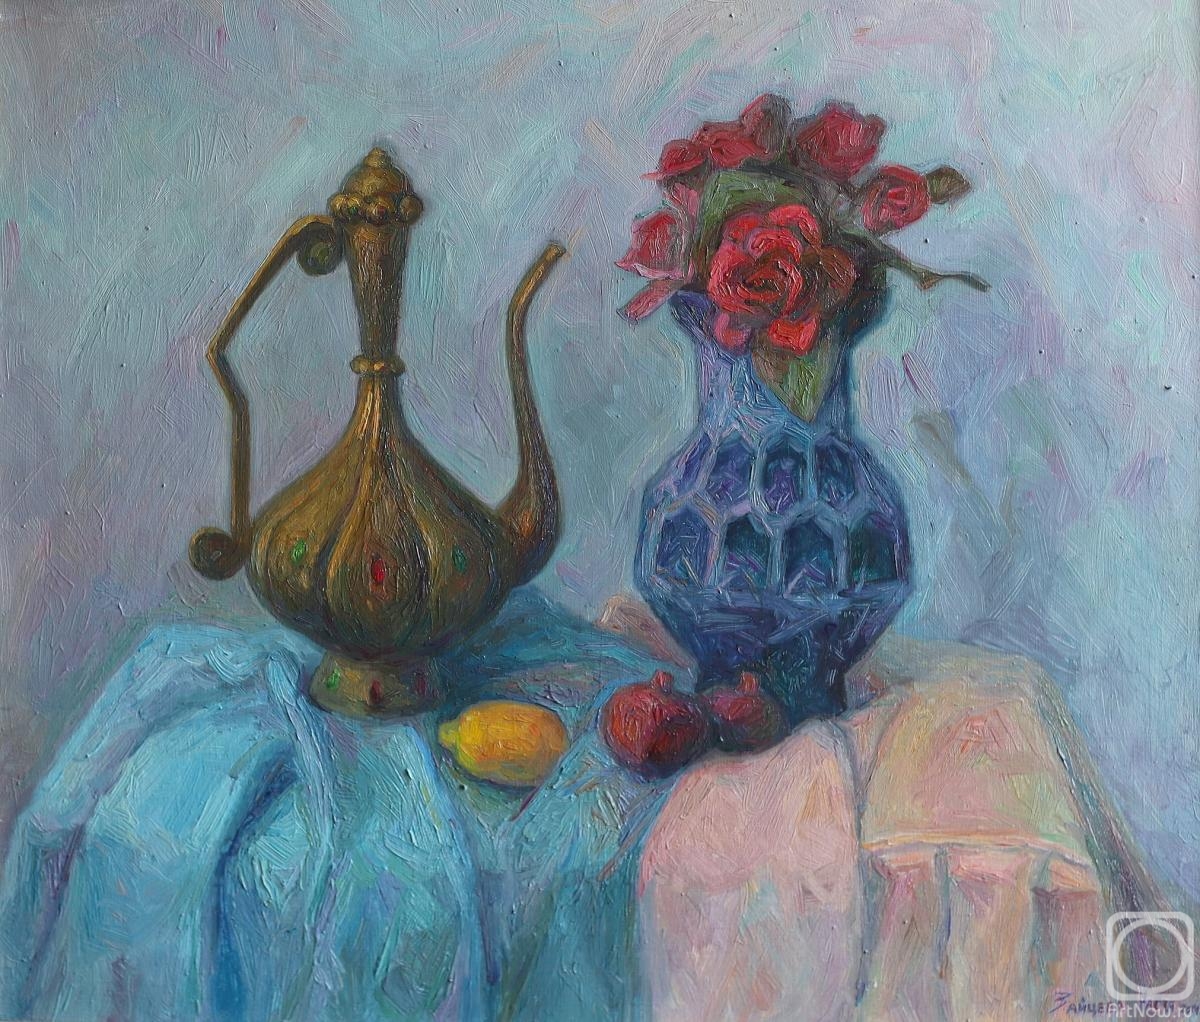 Zaitseva Anastasia. Still life with blue vase